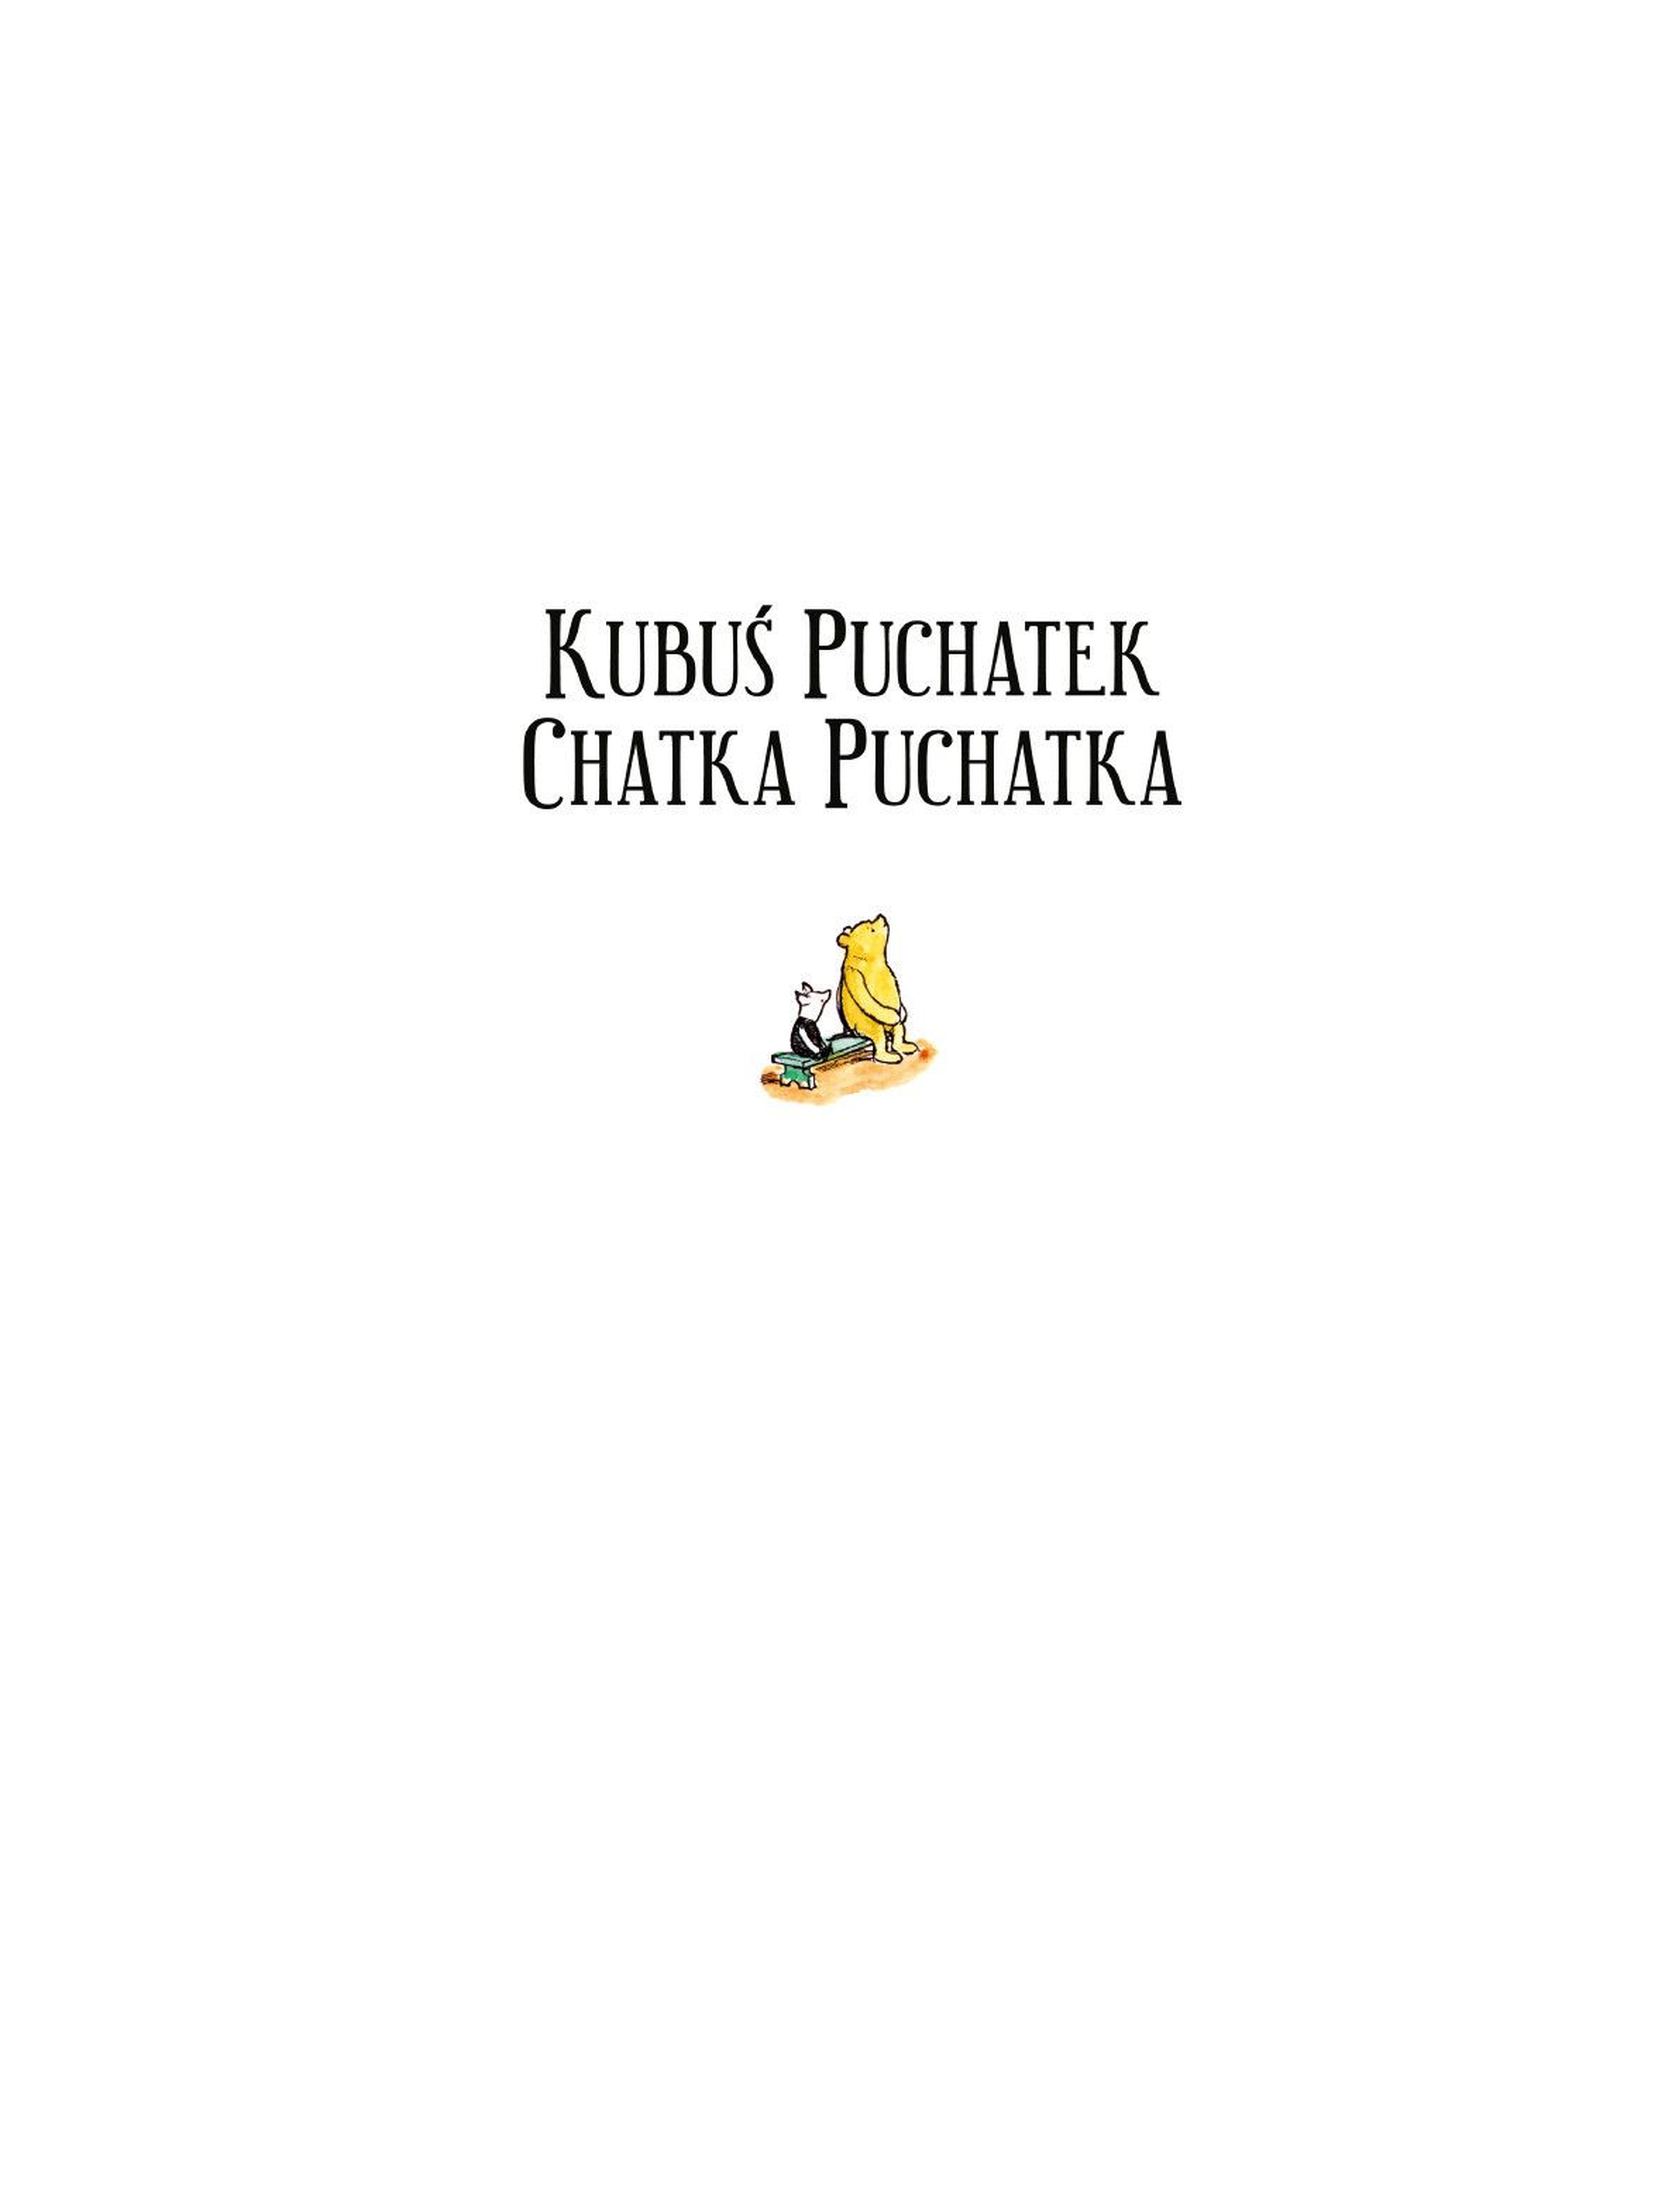 Kubuś Puchatek-Chatka Puchatka- Książka dla dzieci